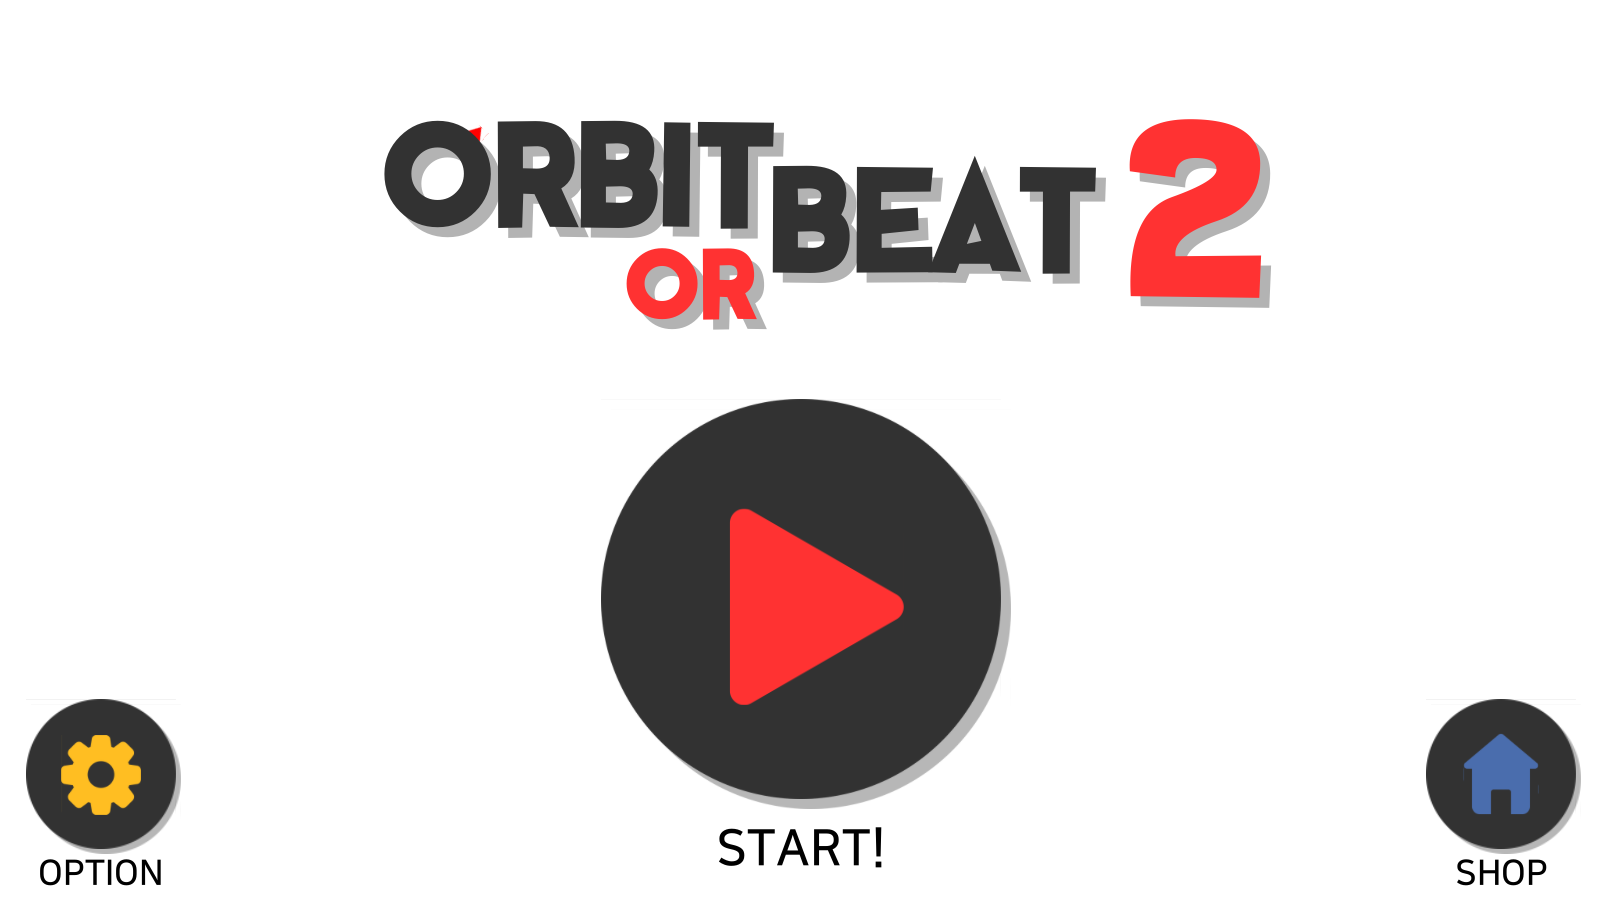 Screenshot 1 of Орбита или Beat2 1.32